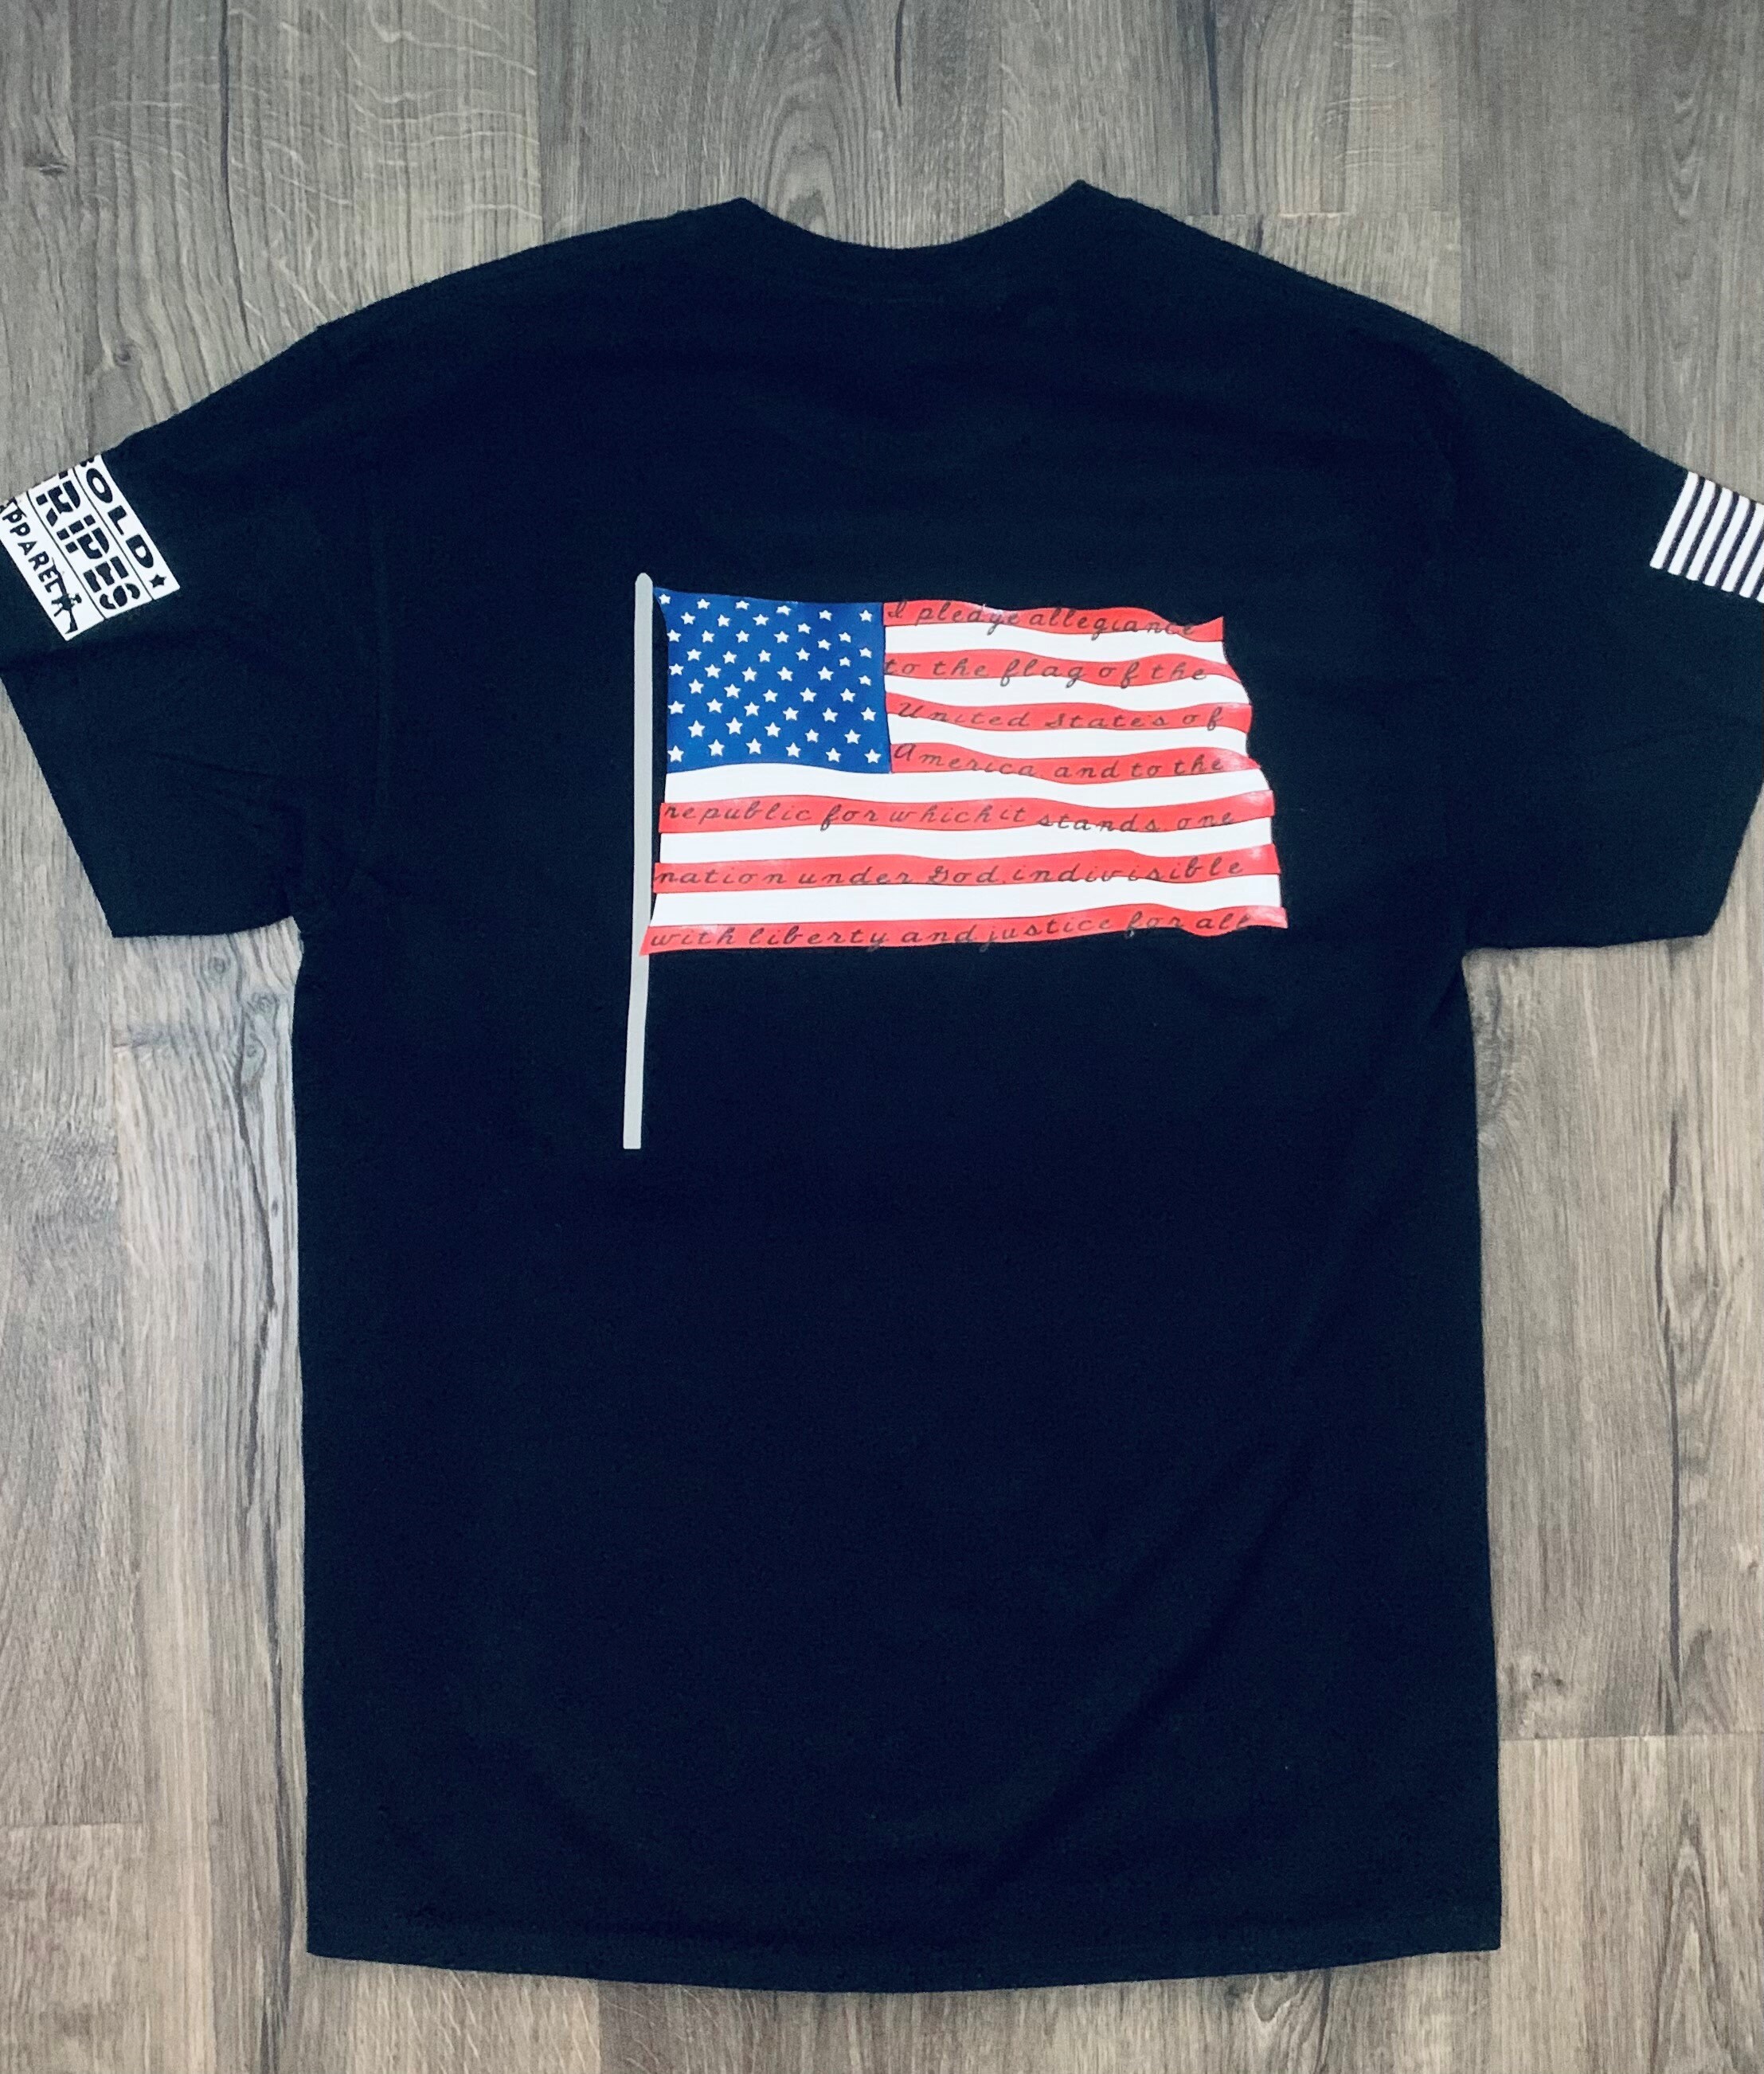 Pledge Allegiance Shirt Pledge Tshirt Mens Shirt American - Etsy UK